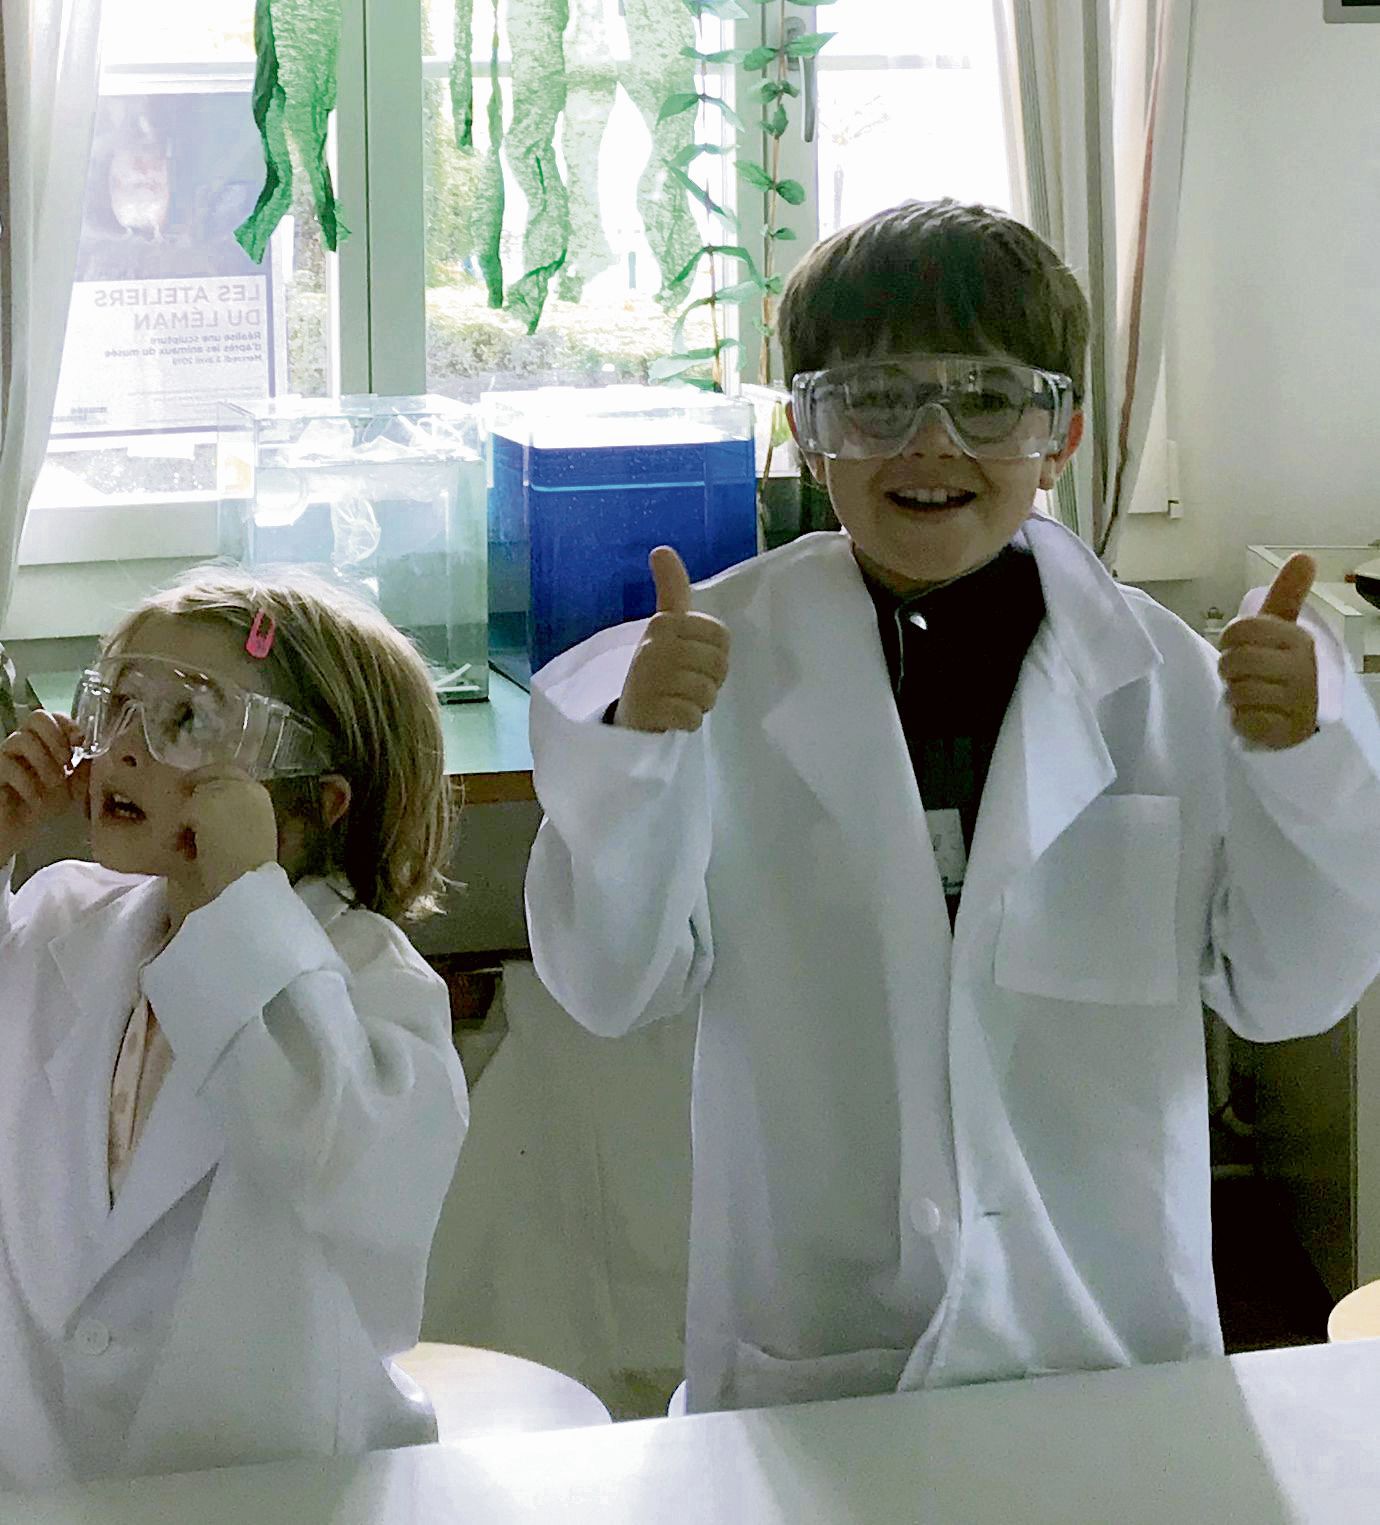 Des enfants transformés en scientifiques et visiblement heureux.